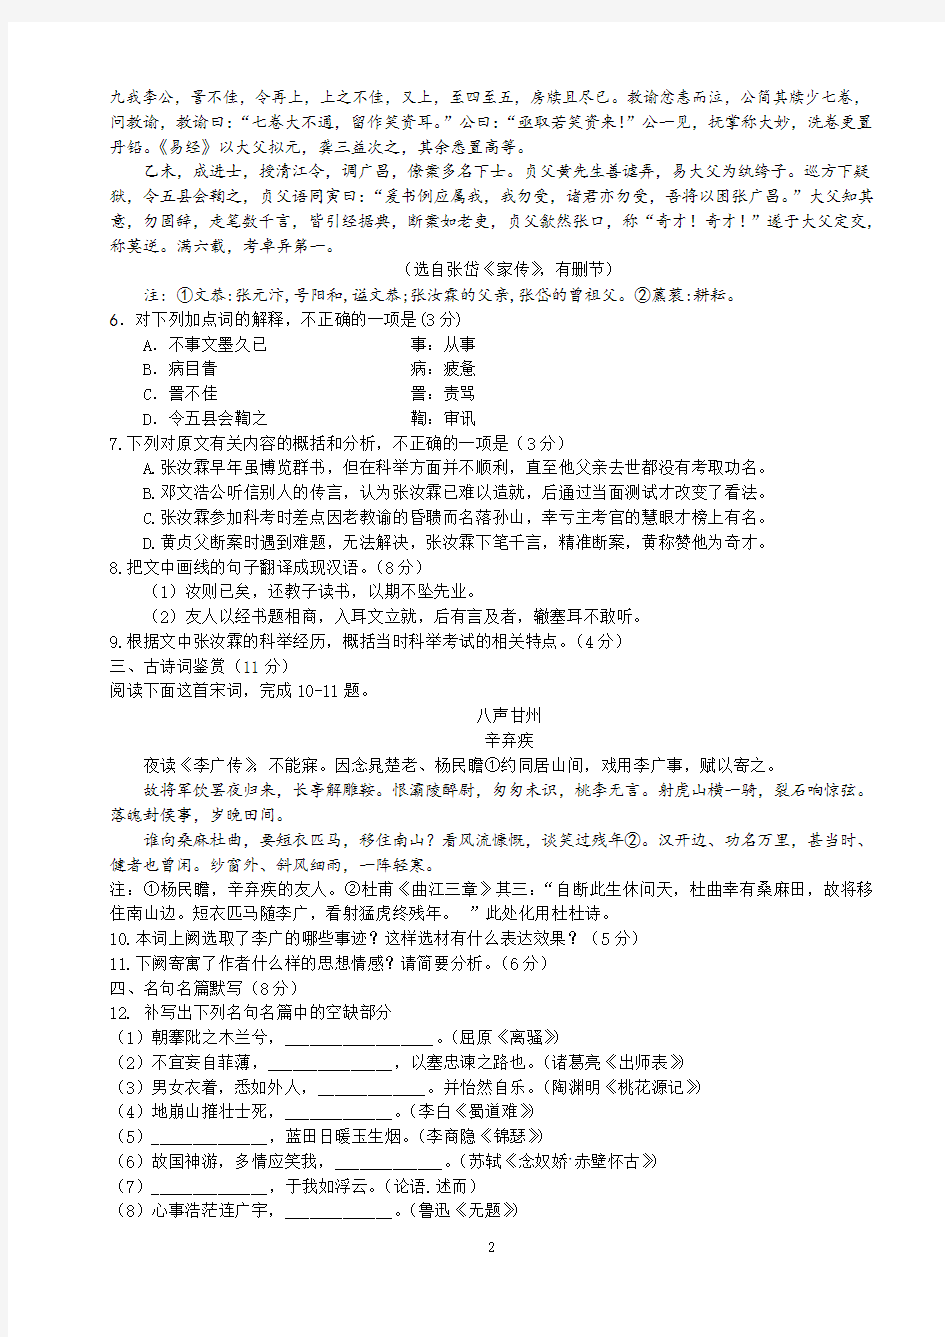 2016年江苏高考语文试卷及答案(完整版,包括附加题)